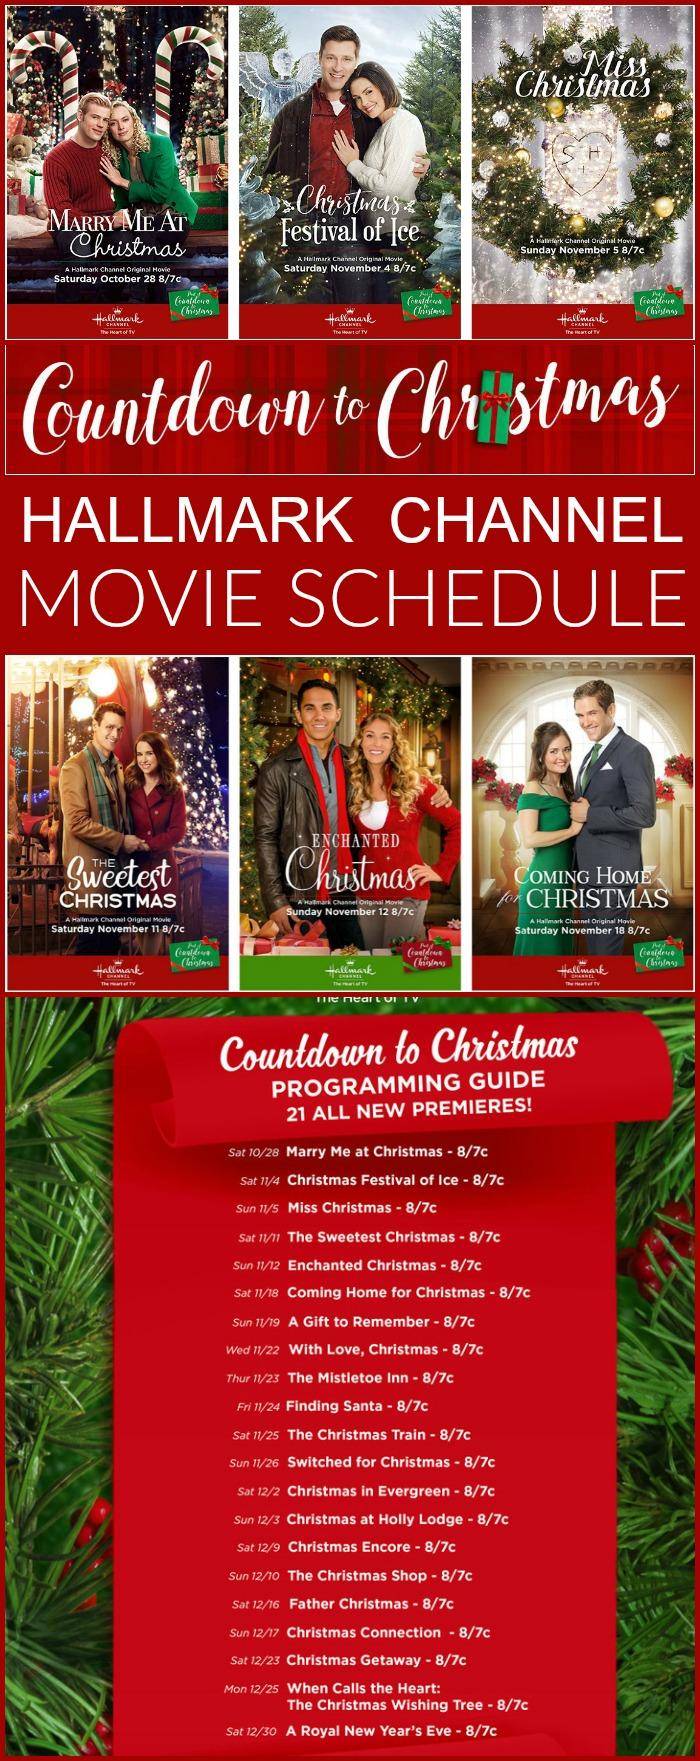 Hallmark Channel Countdown to Christmas Schedule 2017